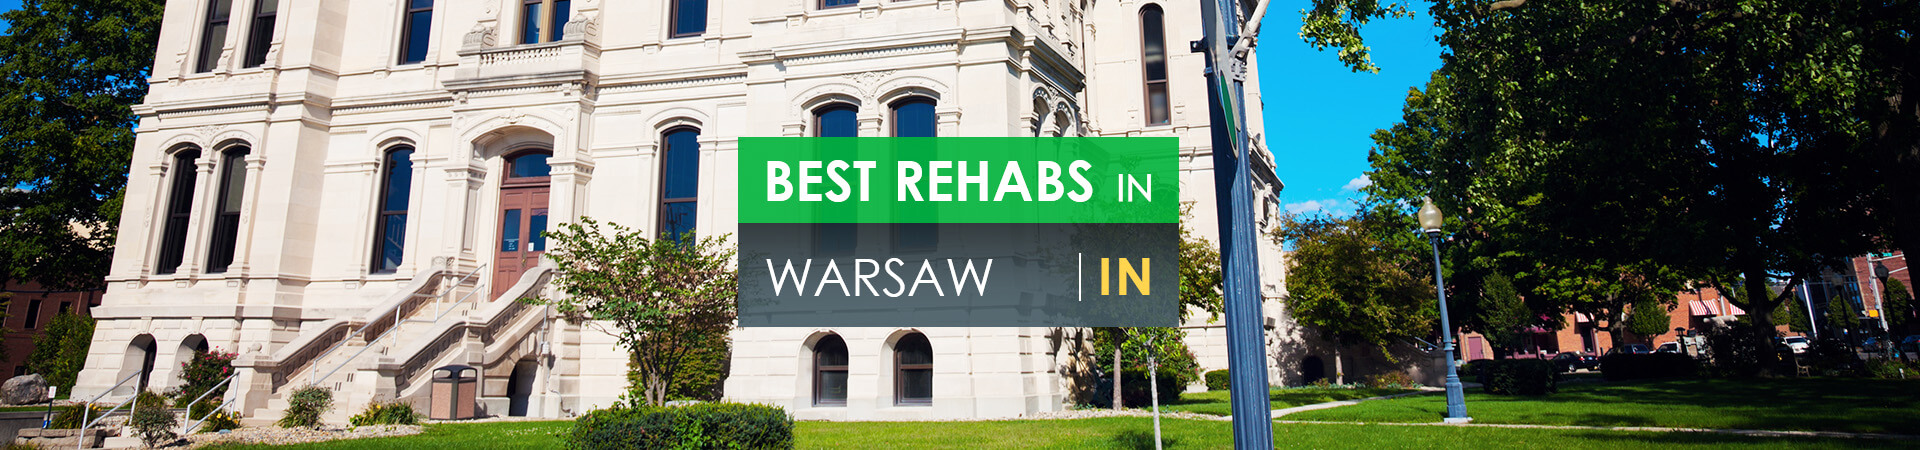 Best rehabs in Warsaw, IN